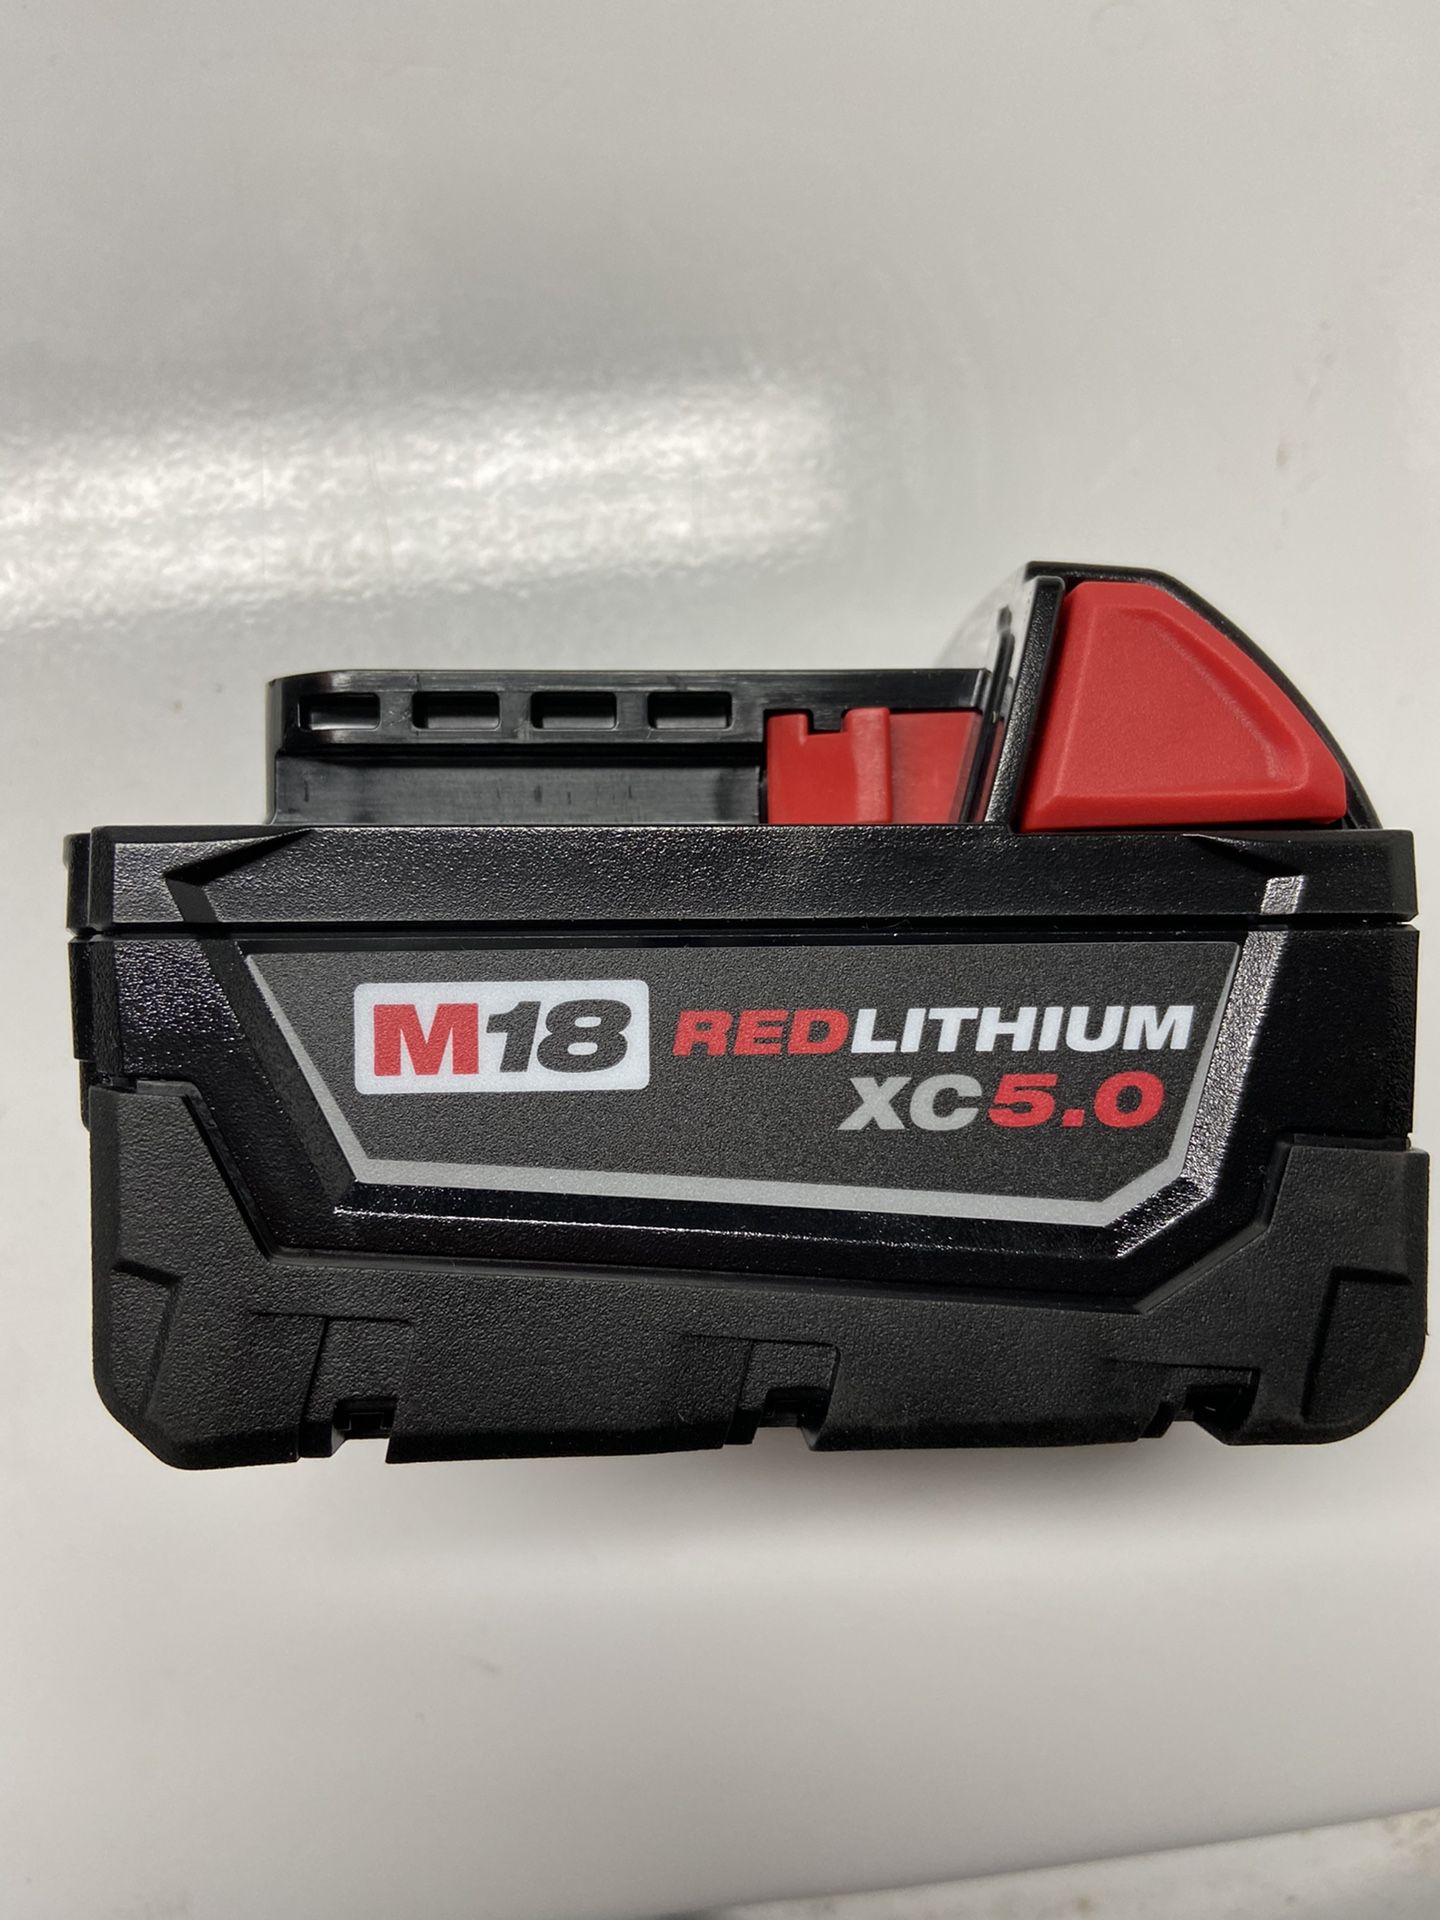 New Milwaukee m18 xc 5.0 battery.